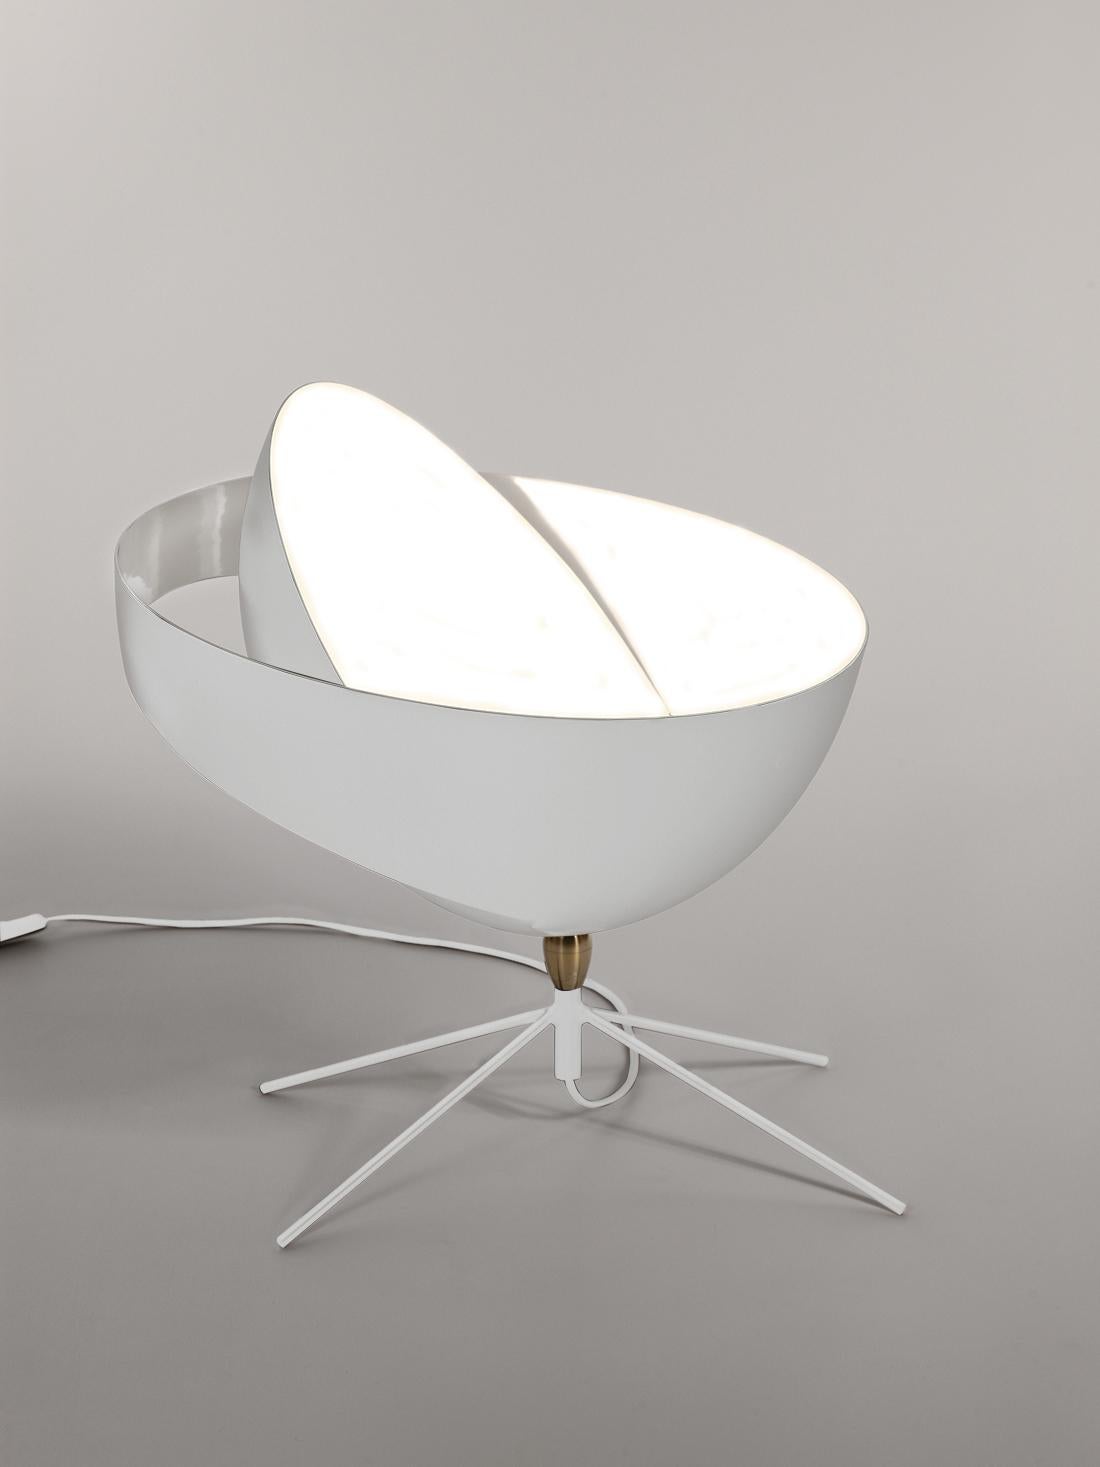 Lampe de table modèle 'Saturn Table Lamp' conçue par Serge Mouille en 1957.

Fabriqué par les Editions Serge Mouille en France. La production des lampes, des appliques et des lampadaires est réalisée de manière artisanale avec les mêmes matériaux et